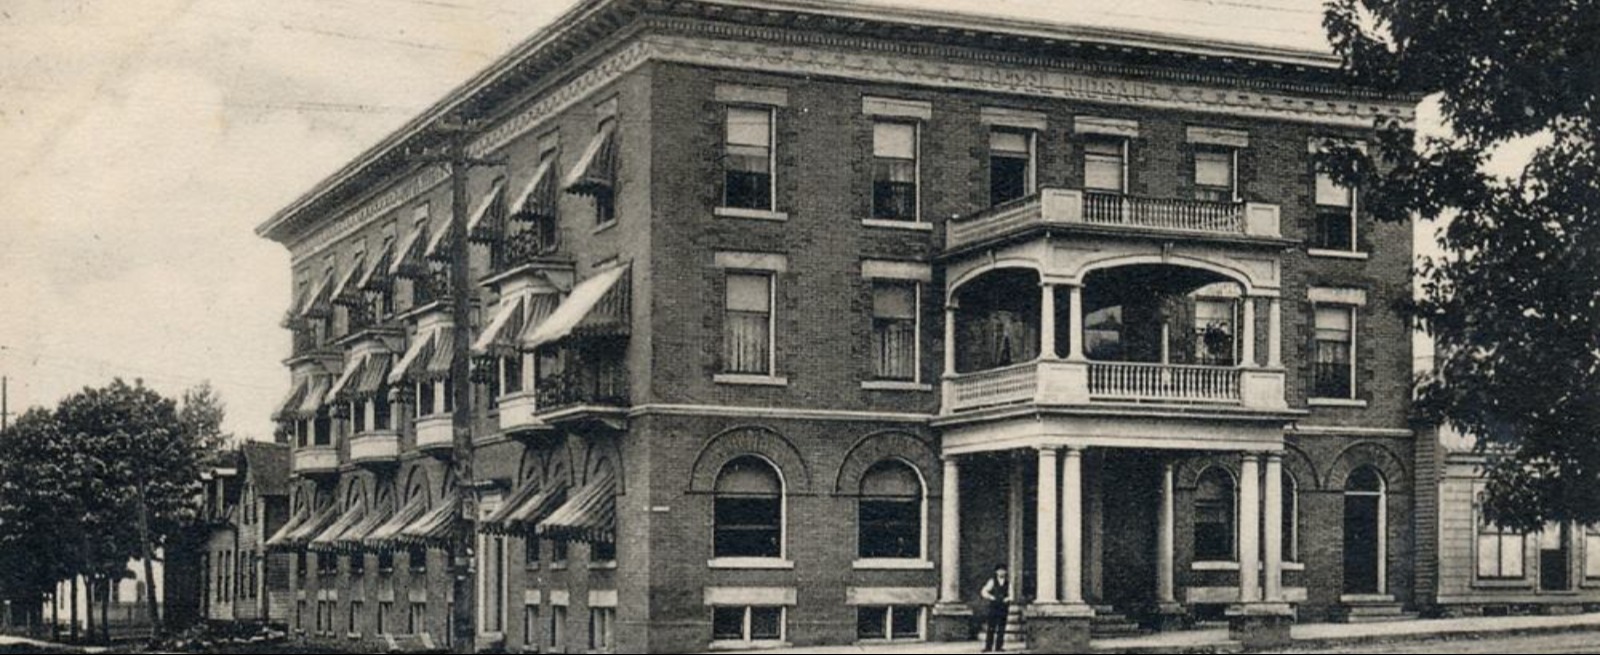 Hotel Rideau cira 1915